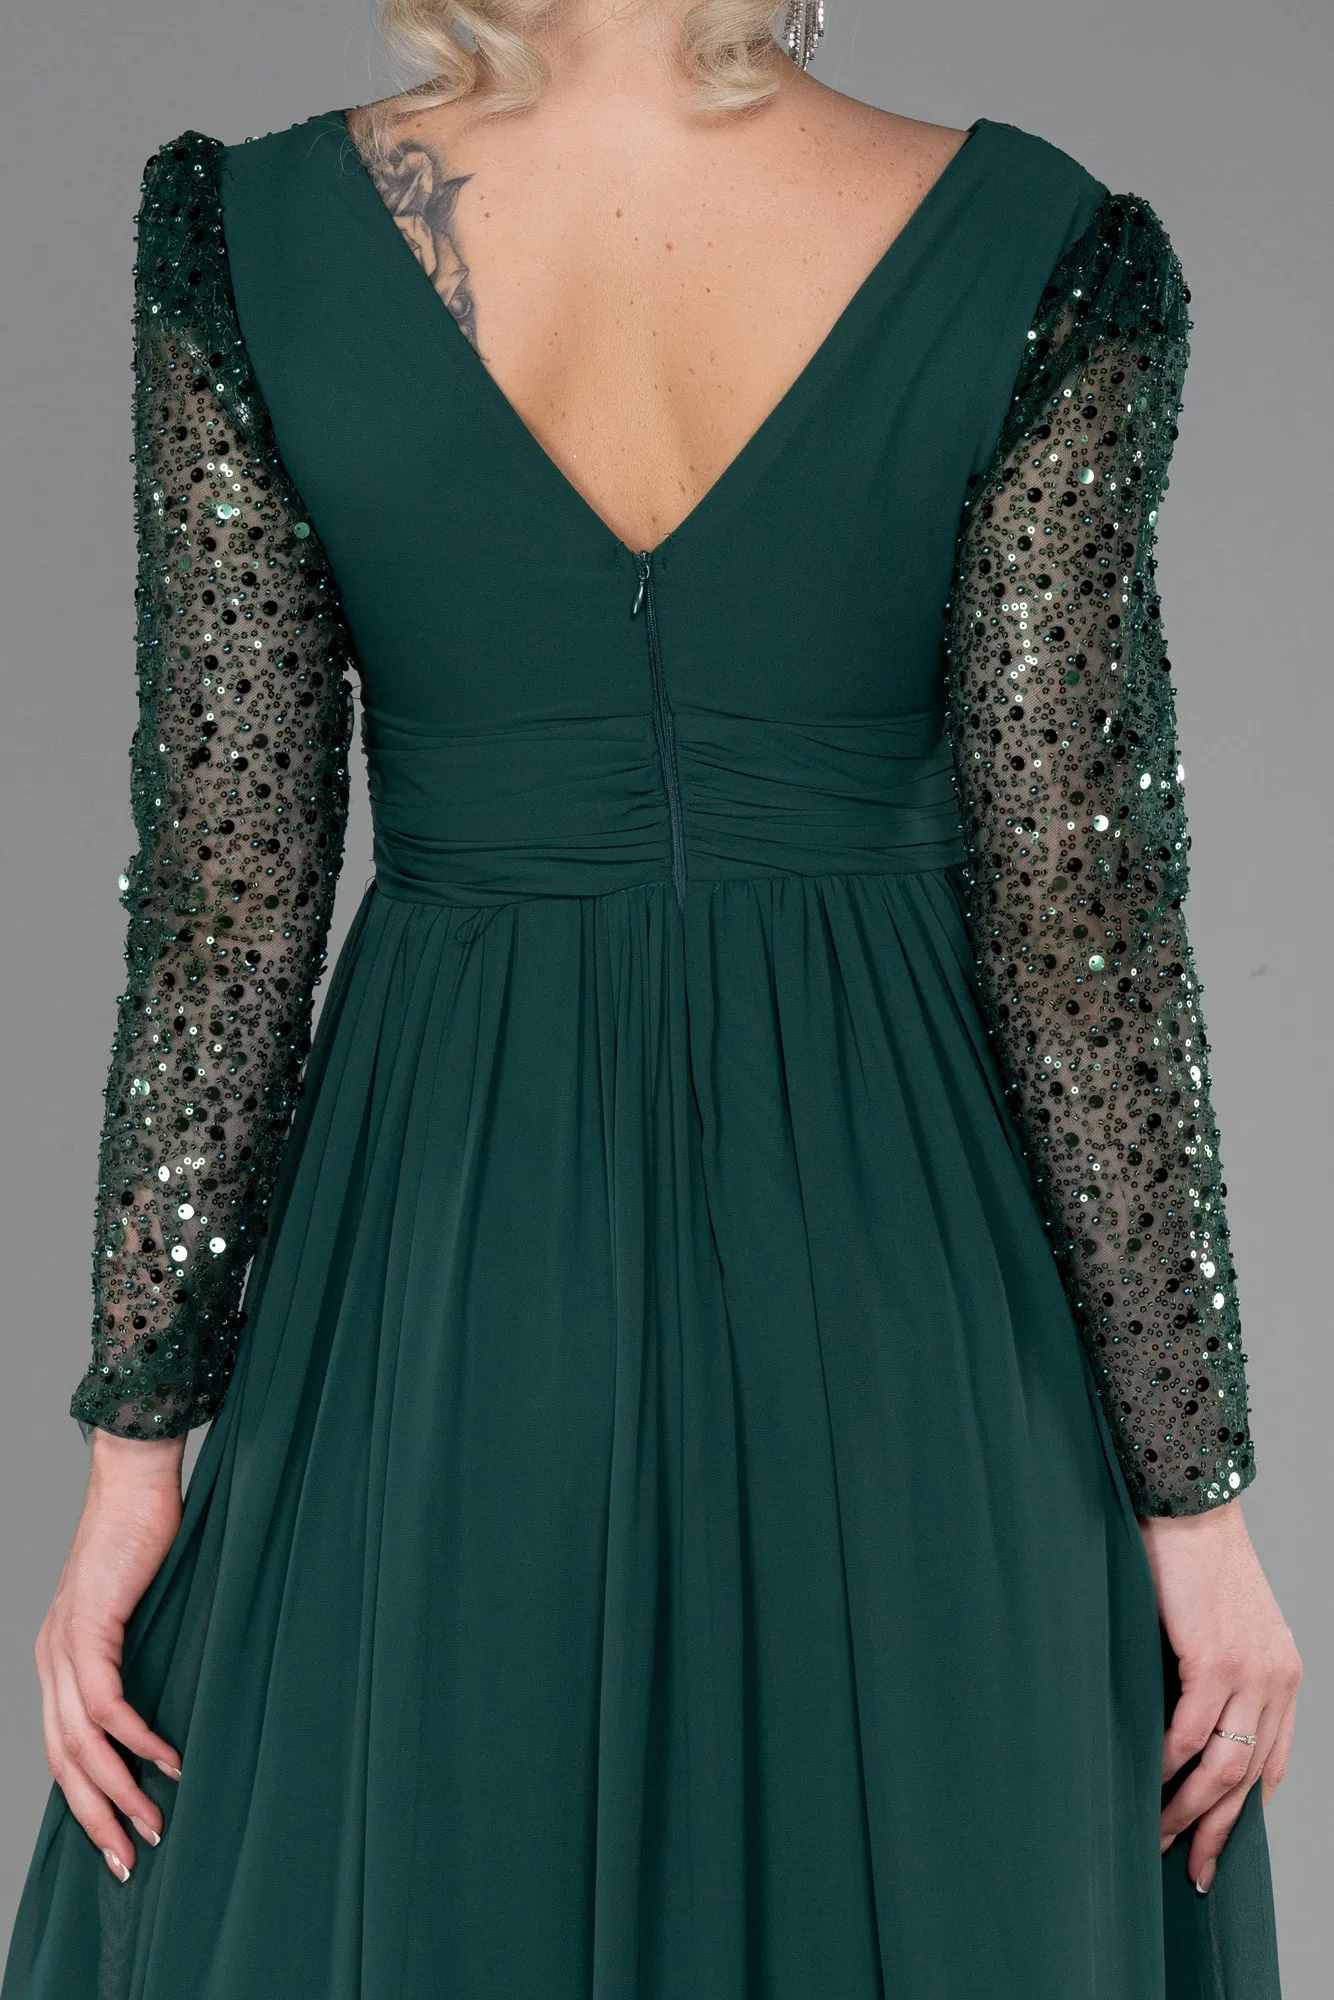 Emerald Green-Long Chiffon Evening Dress ABU3262